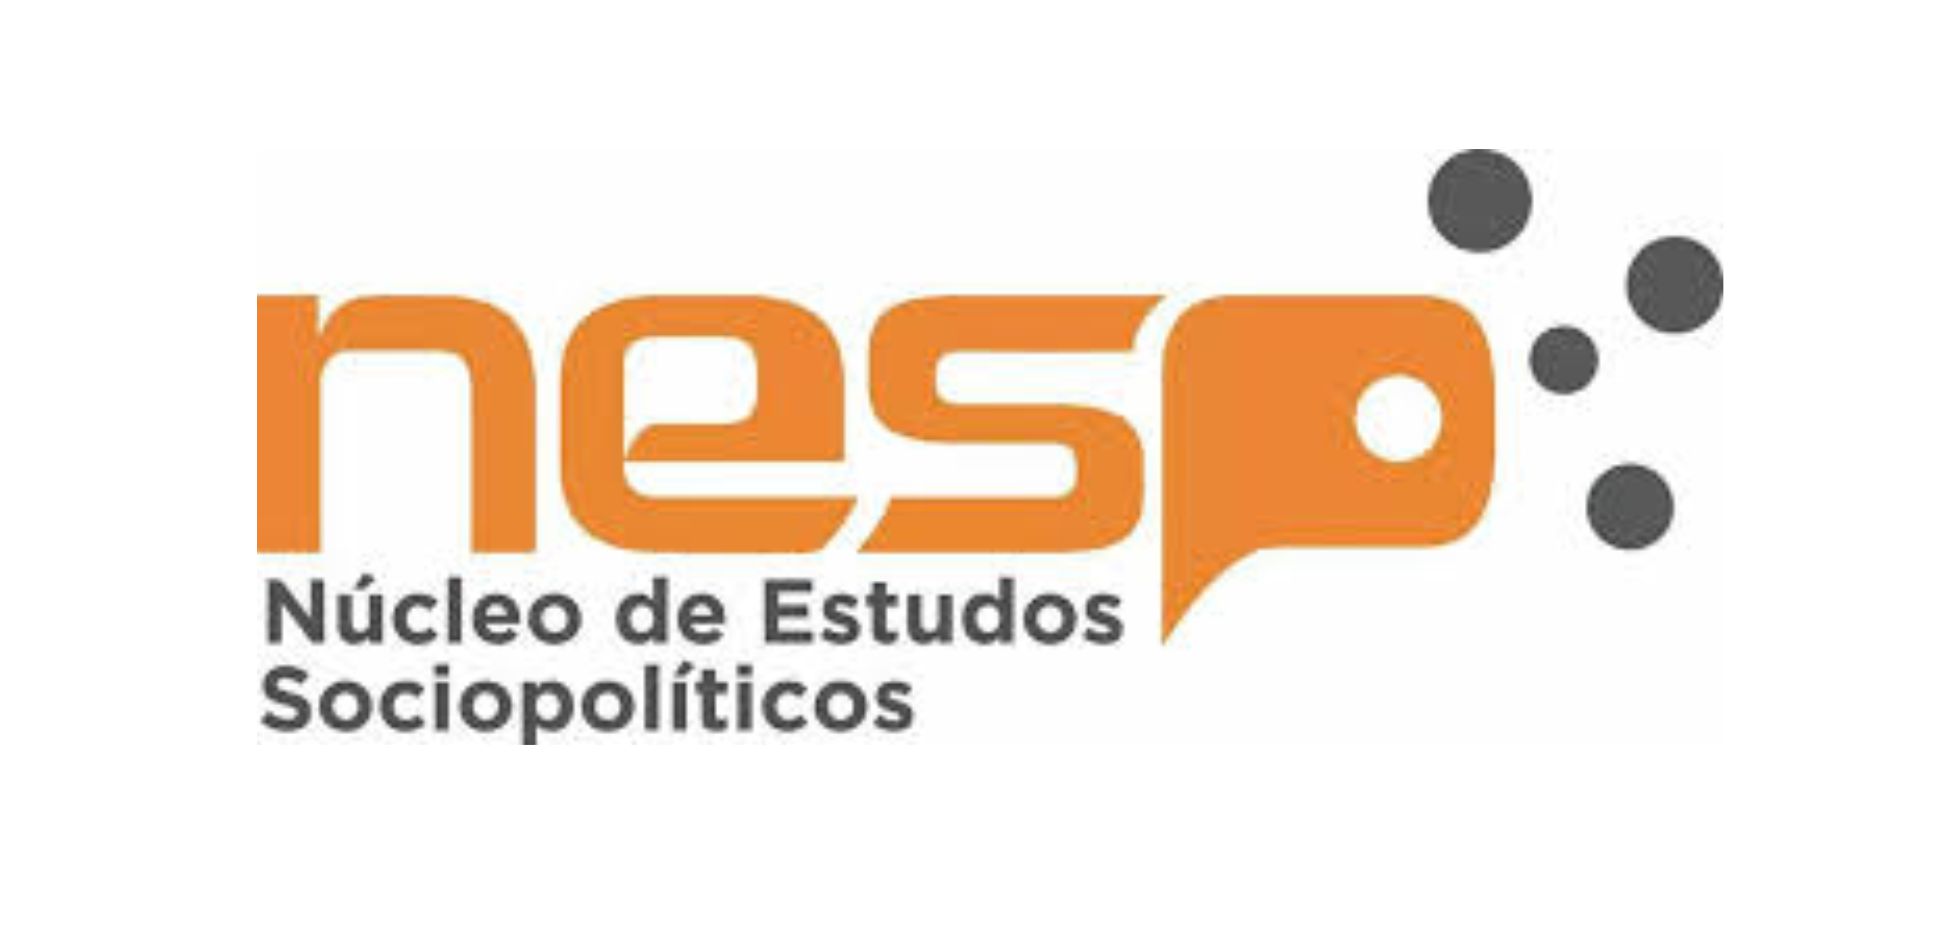 Nesp produz vídeos sobre as eleições 2018